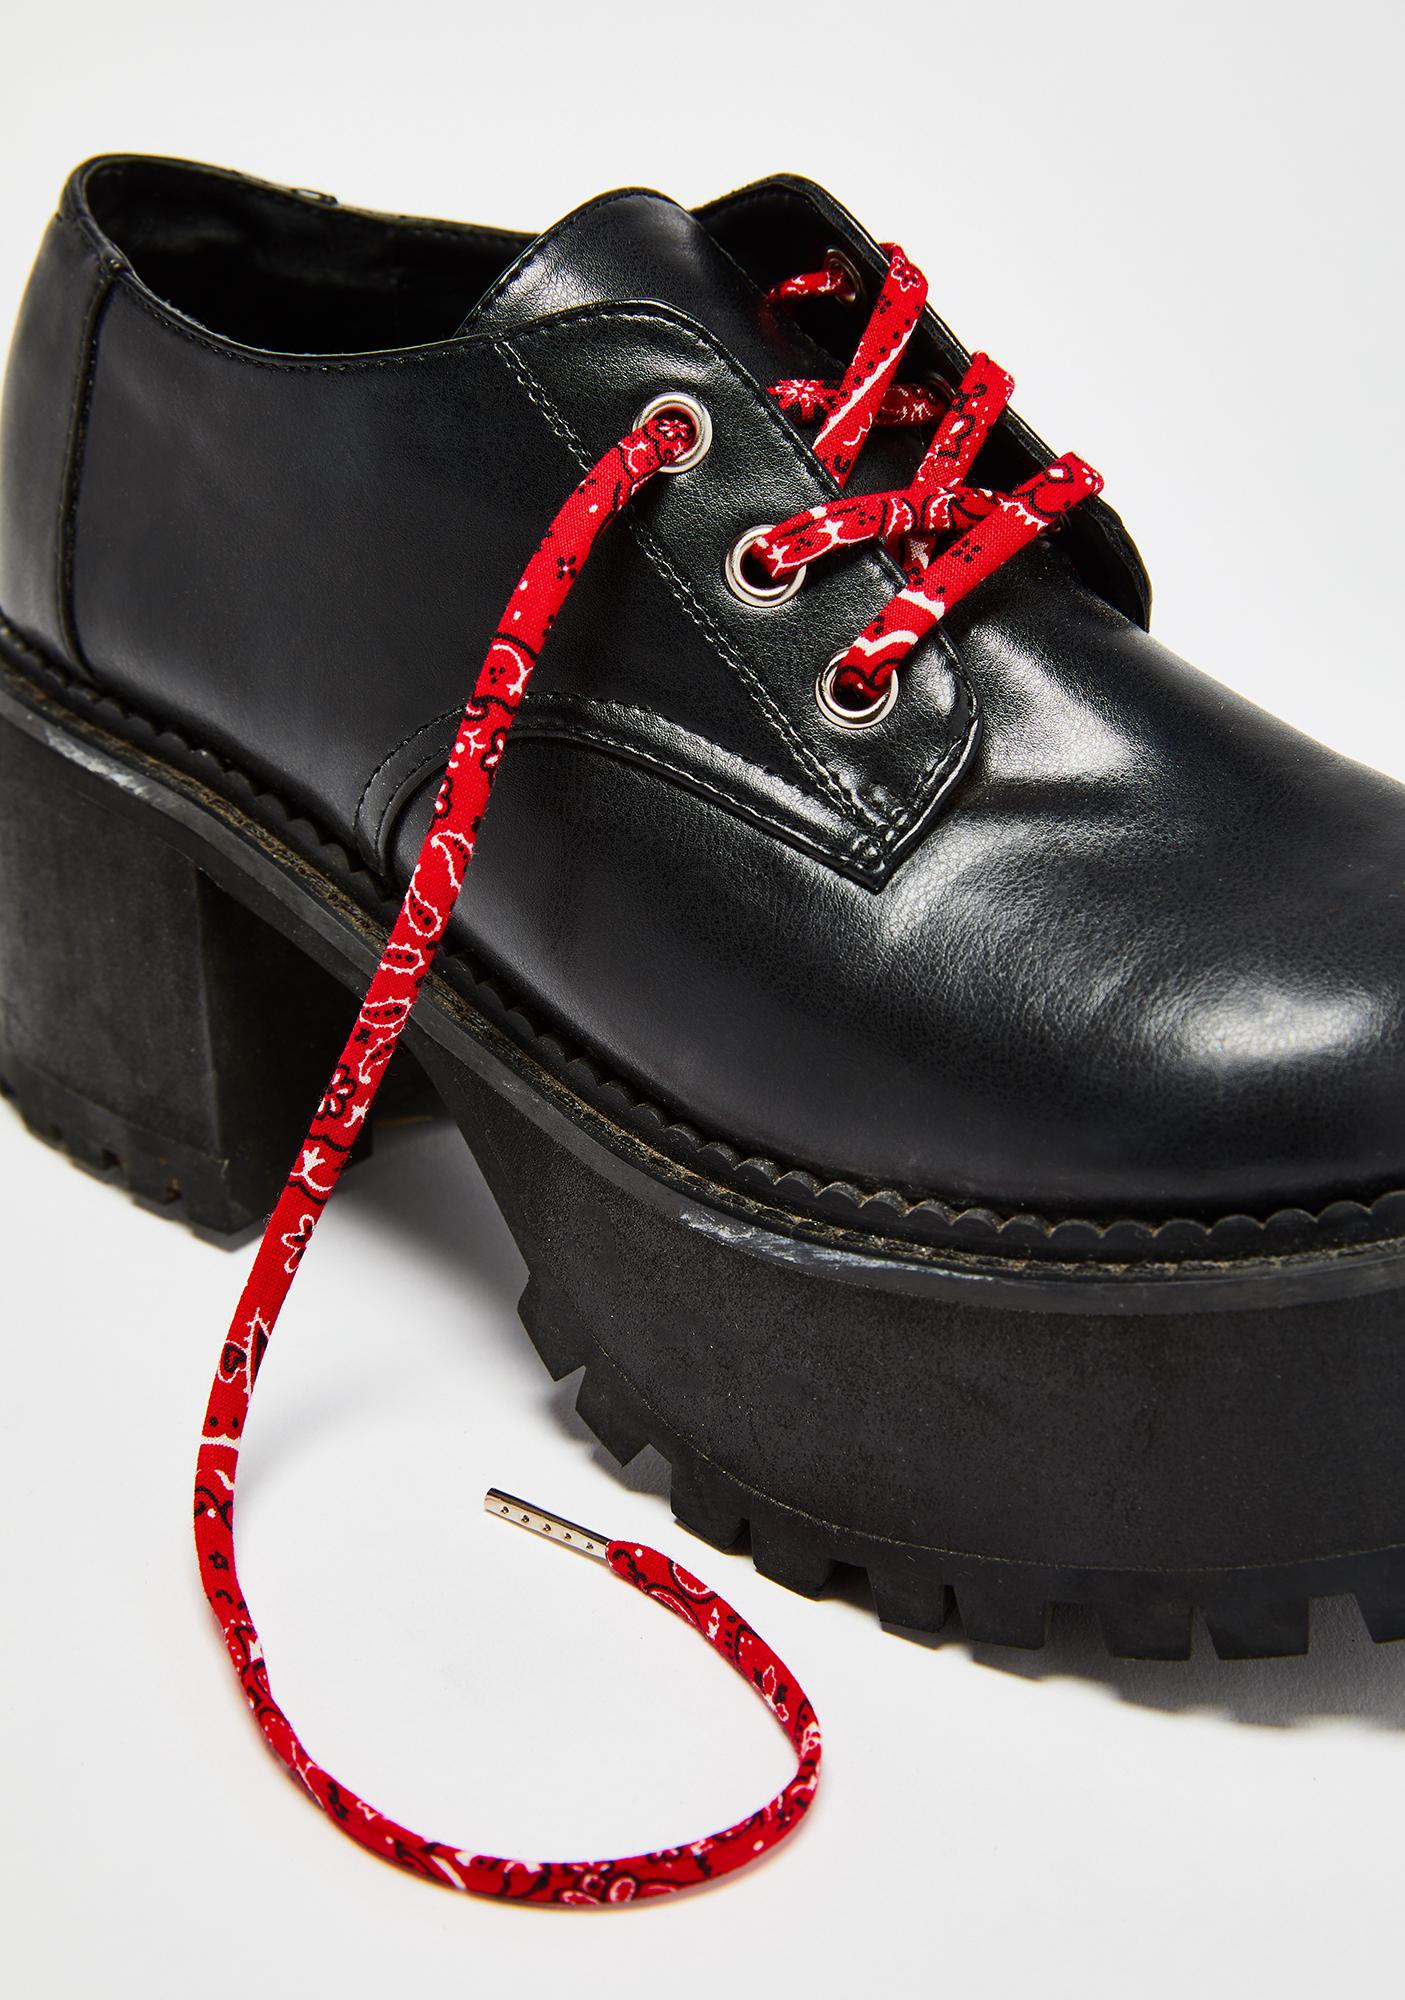 bandana shoe laces